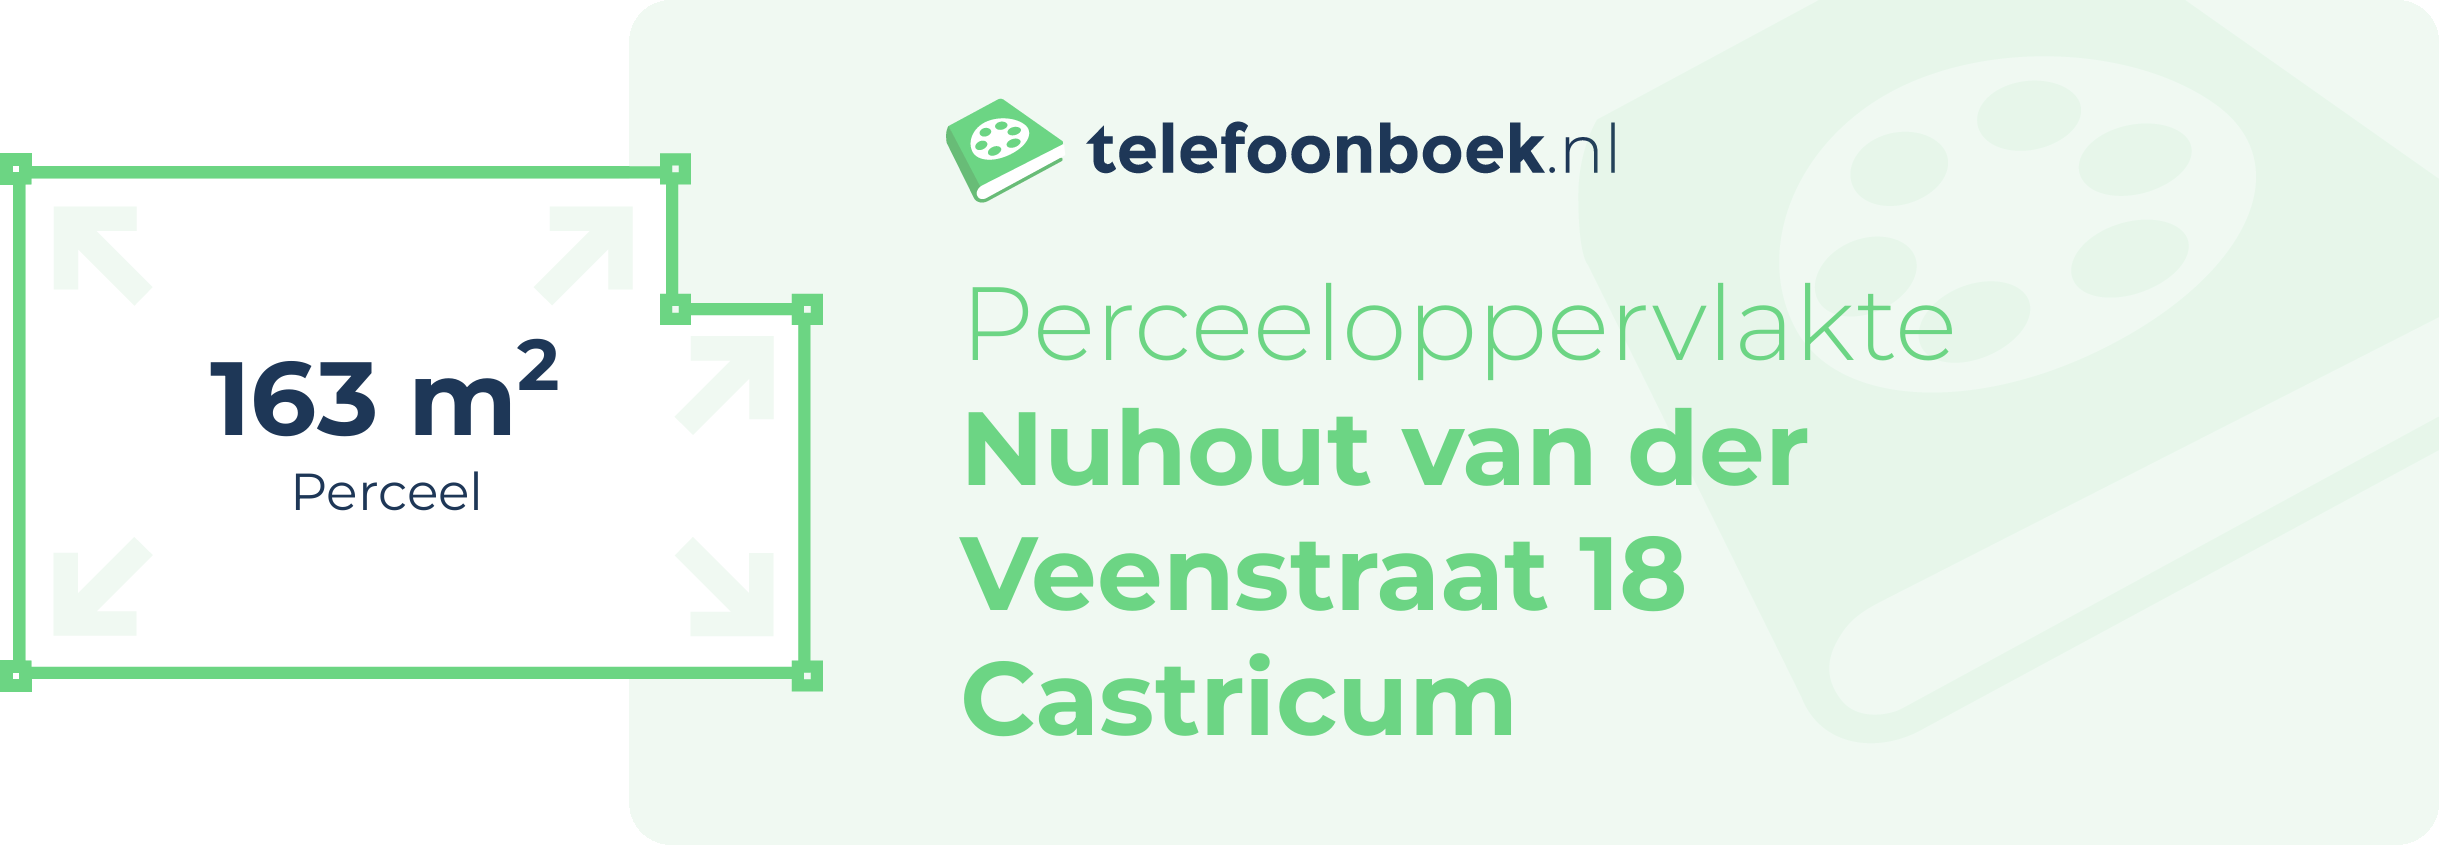 Perceeloppervlakte Nuhout Van Der Veenstraat 18 Castricum